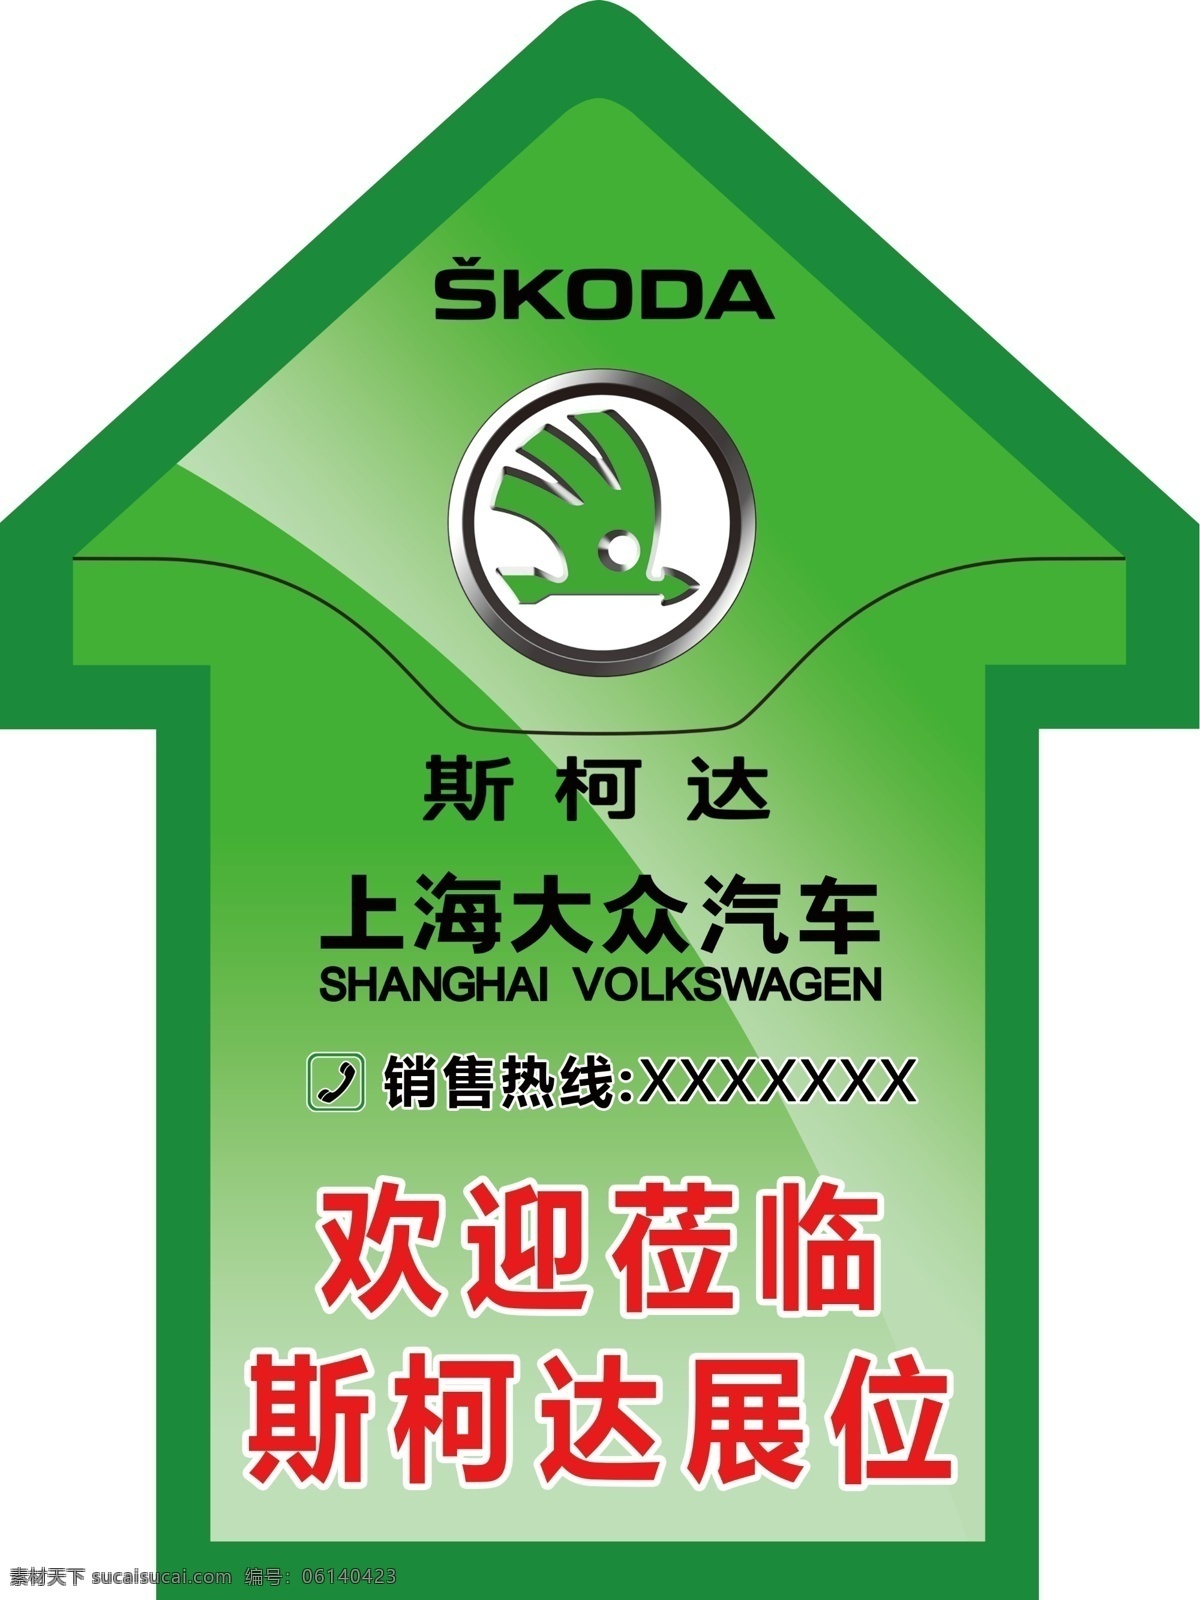 贴 箭头 地贴 绿色背景 上海大众 斯柯达 斯 柯达 车展 原创设计 原创海报